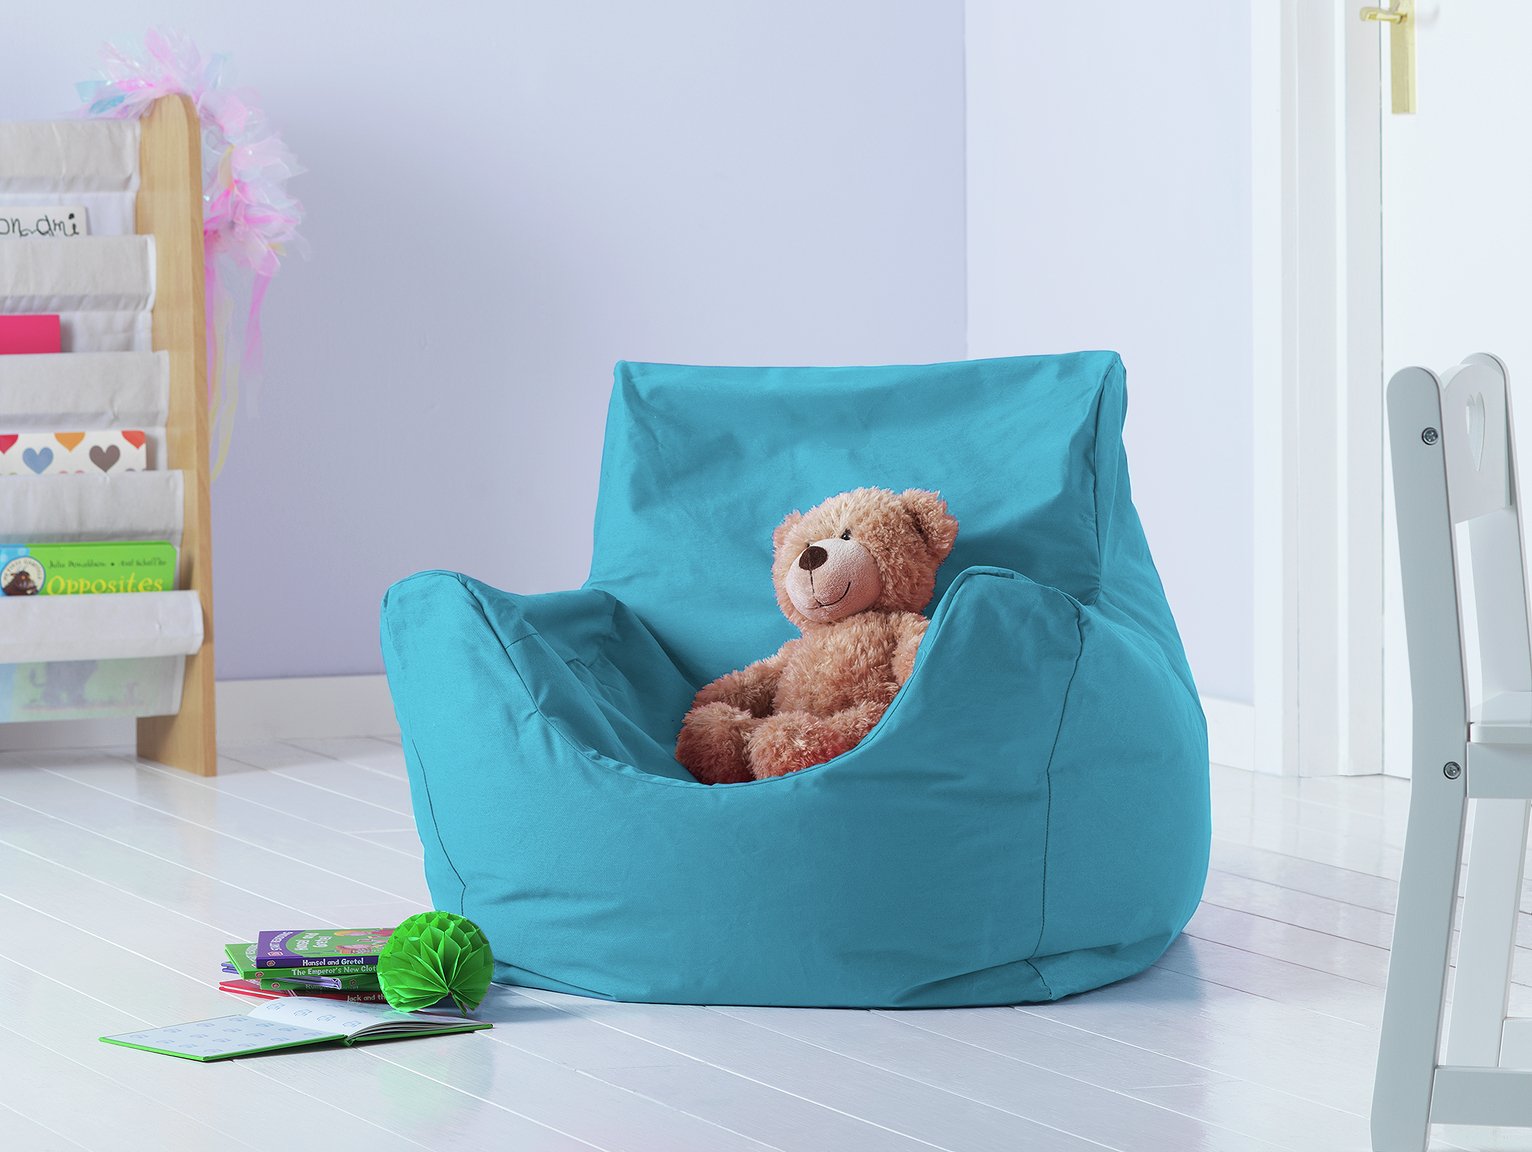 Argos Home Kids Funzee Blue Bean Bag Chair Review